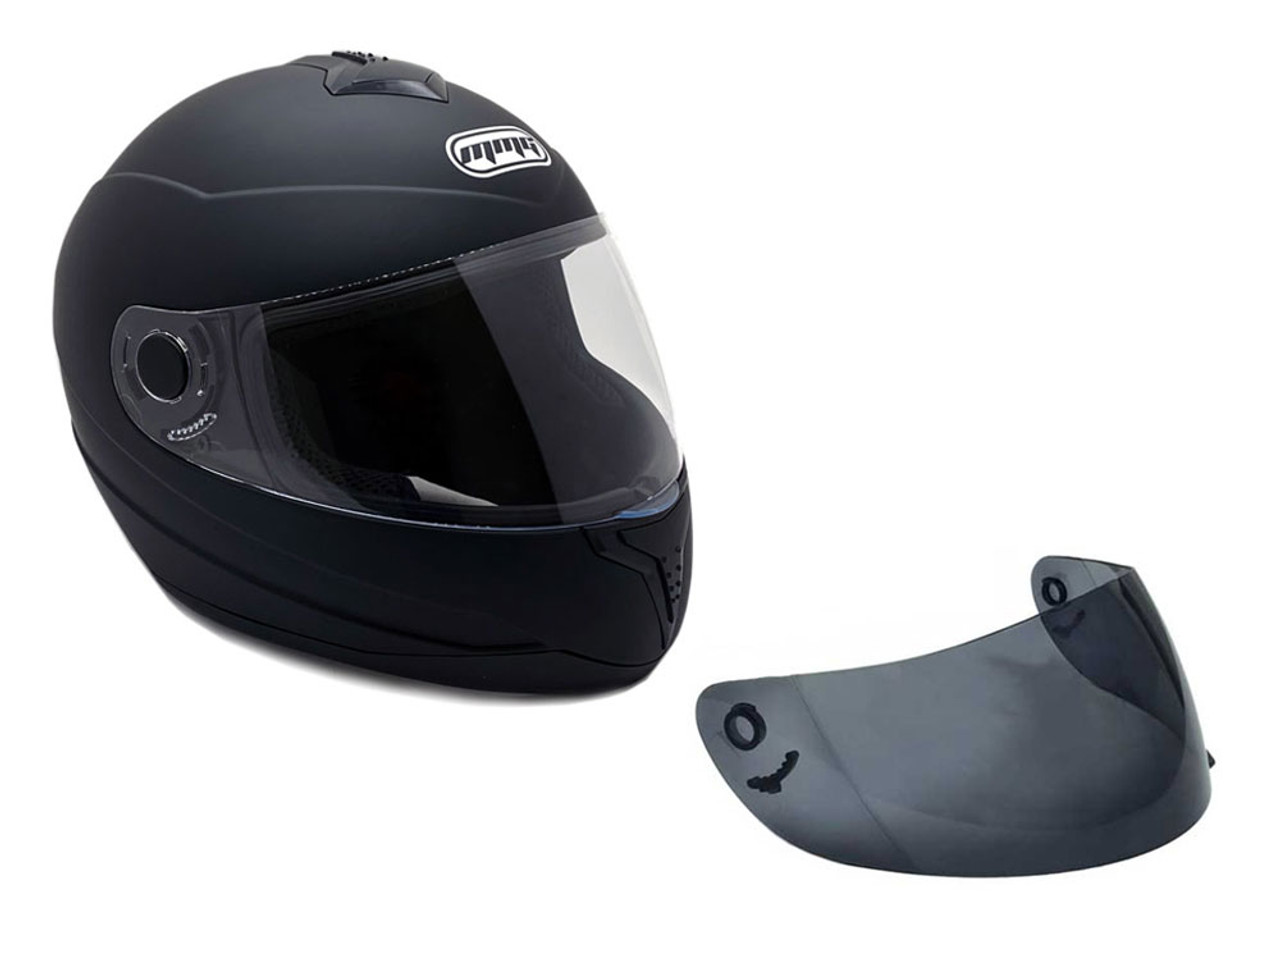 Gliss Model Full Face MMG Helmet: Multi-color Design, DOT Approved